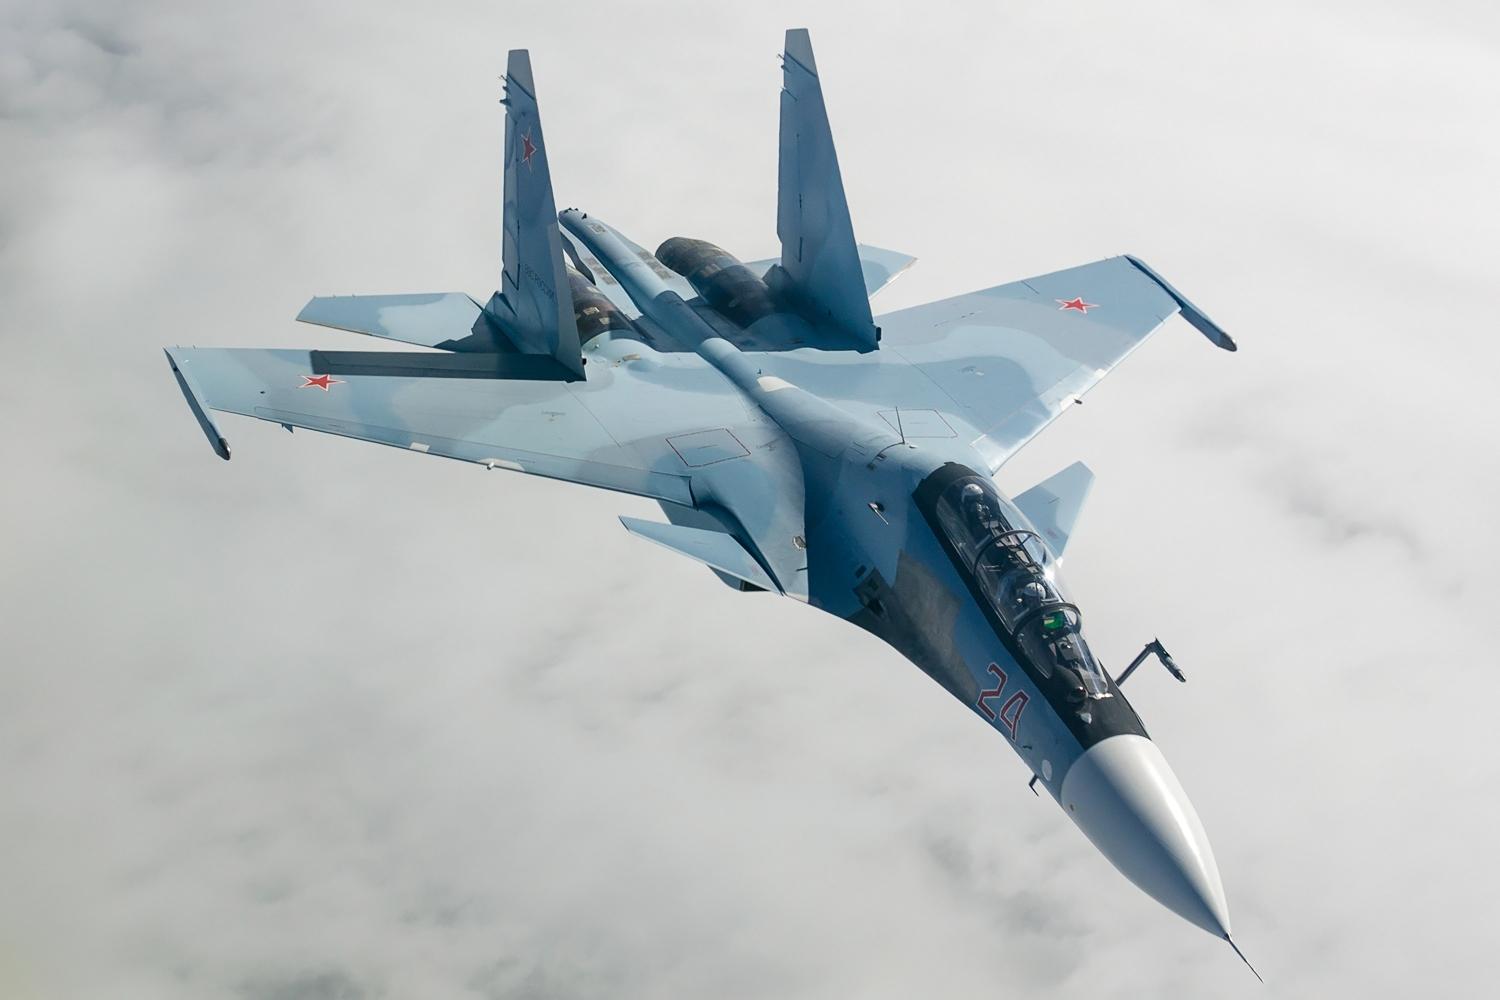 US fighter jets intercept Russian warplanes near Alaska